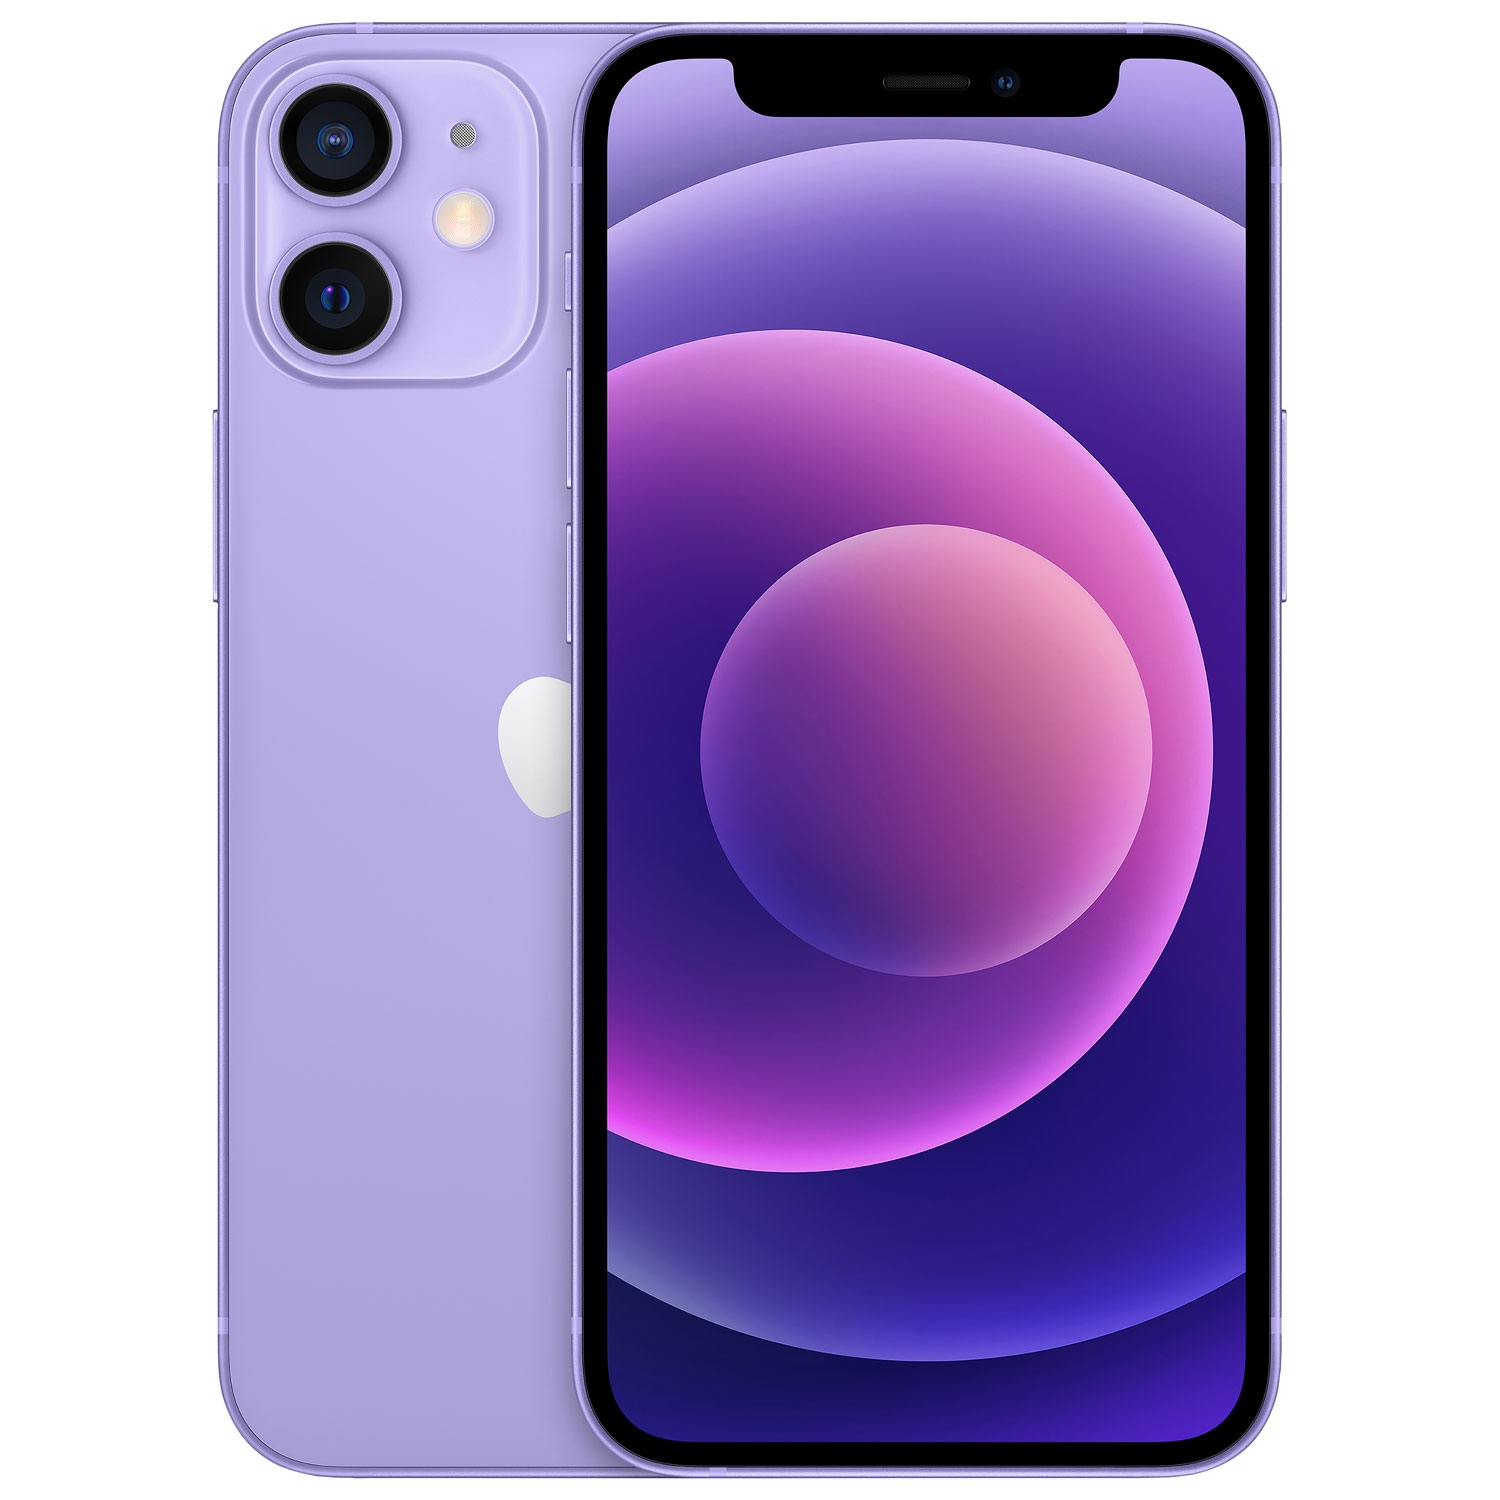 Refurbished (Good) - Apple iPhone 12 mini 64GB - Purple - Unlocked